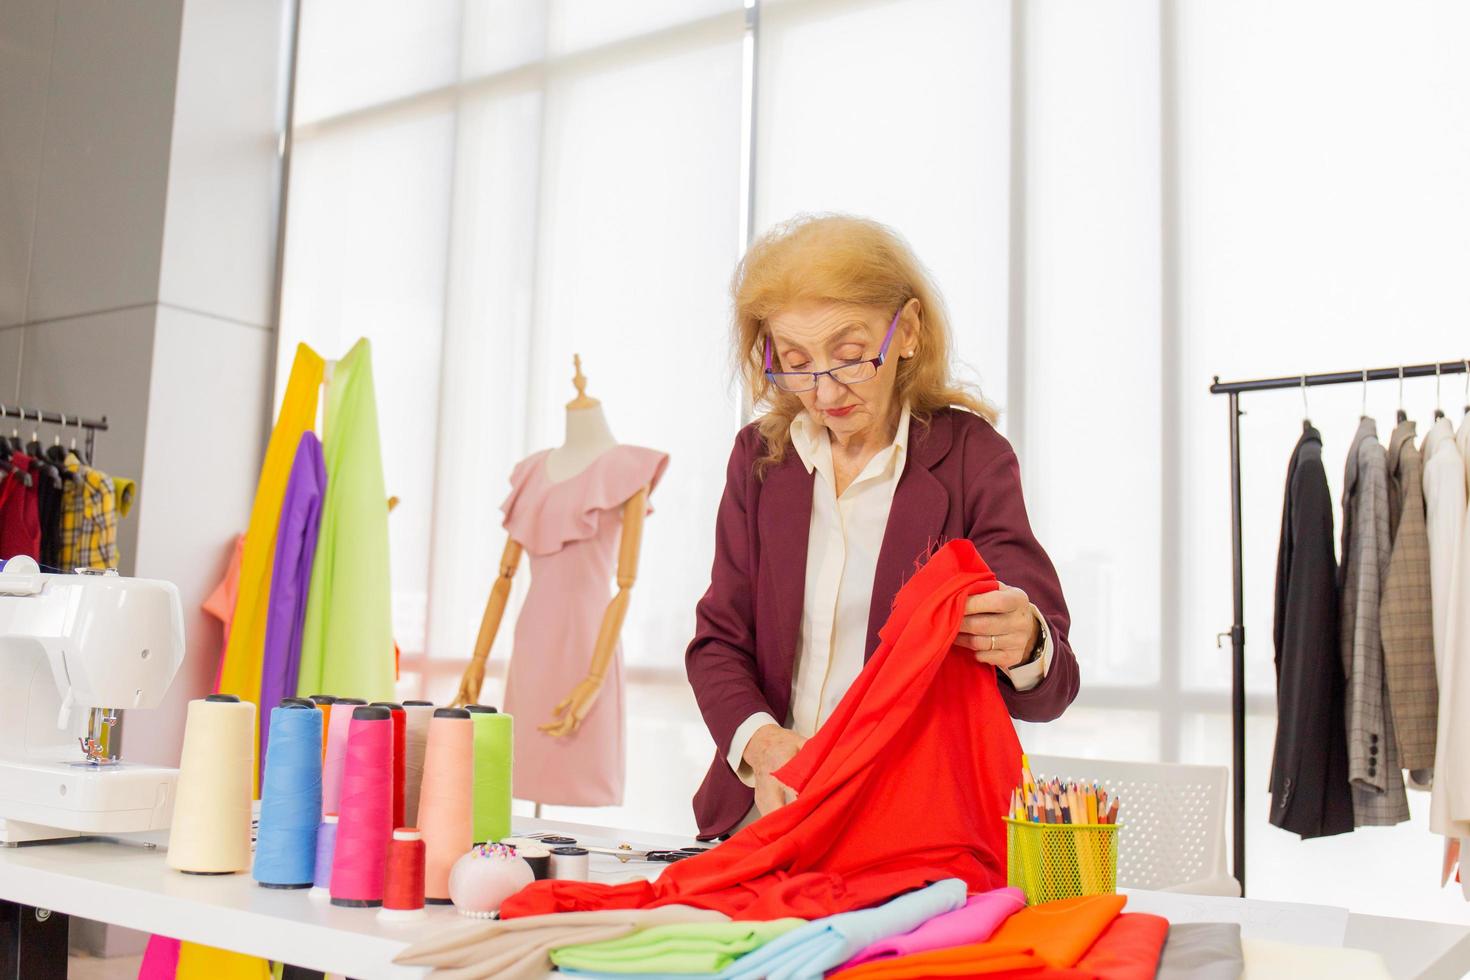 professionele vrouwelijke naai-ontwerpers op kantoor hebben verschillende kleurenschema's voor stoffen. foto